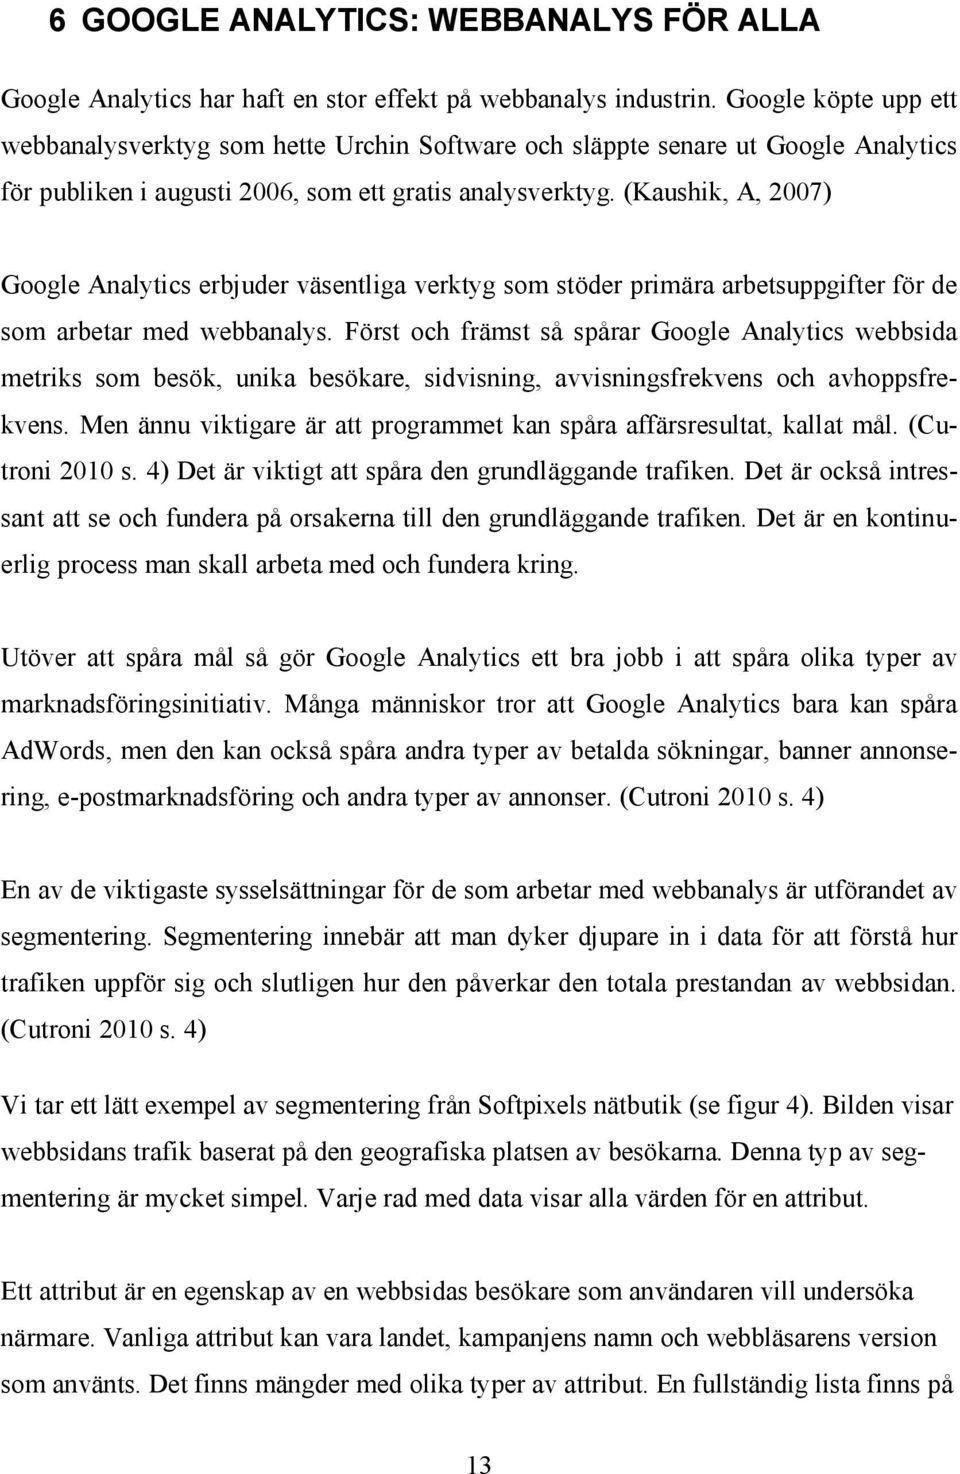 (Kaushik, A, 2007) Google Analytics erbjuder väsentliga verktyg som stöder primära arbetsuppgifter för de som arbetar med webbanalys.